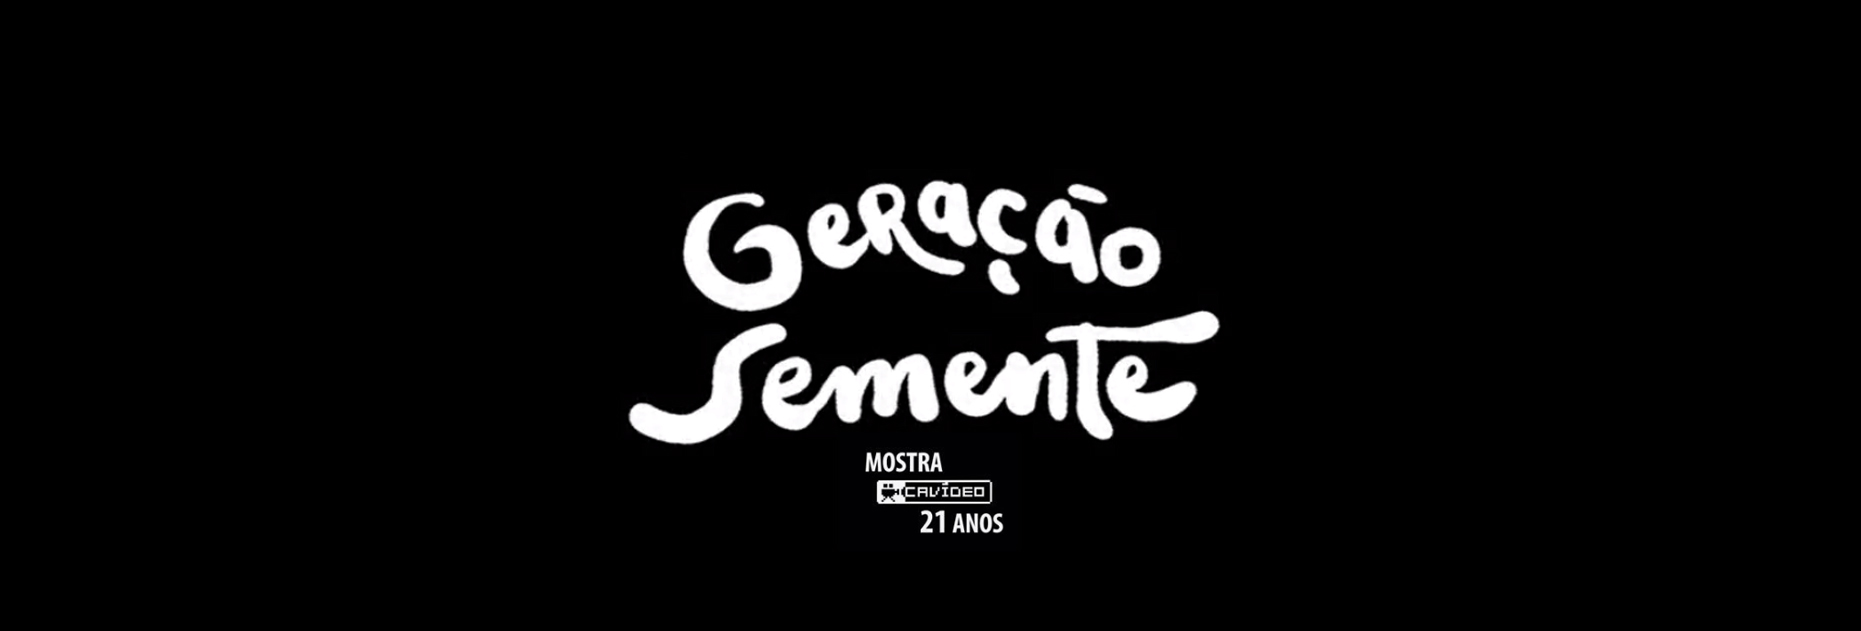 Documentário Semente da Musica Brasileira abre Festival Cavideo 21 anos